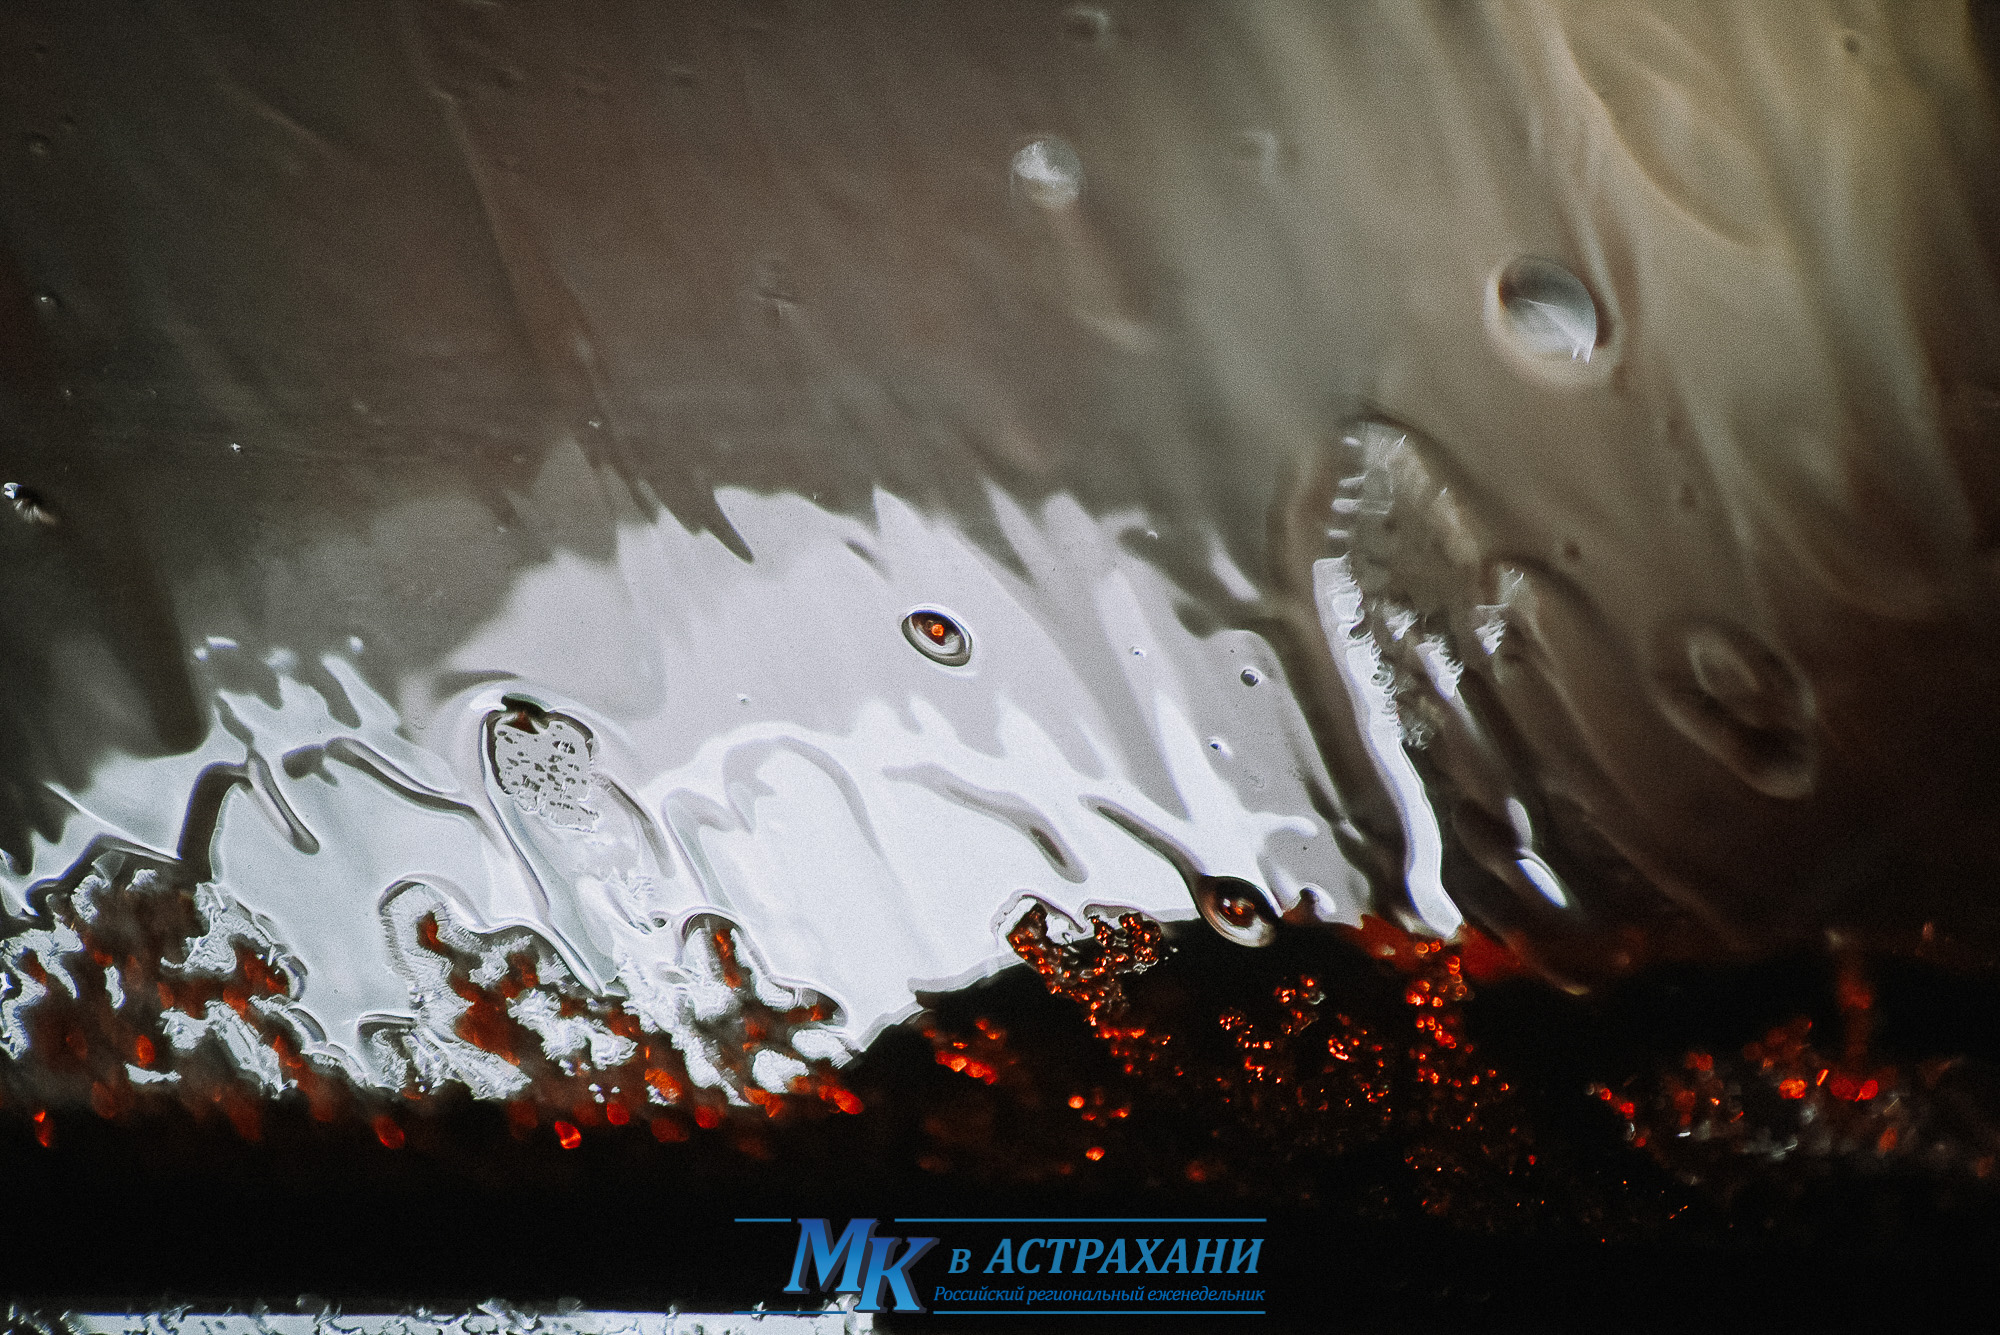 DSC 5779 2 Ледяной дождь в Астрахани глазами фотографа